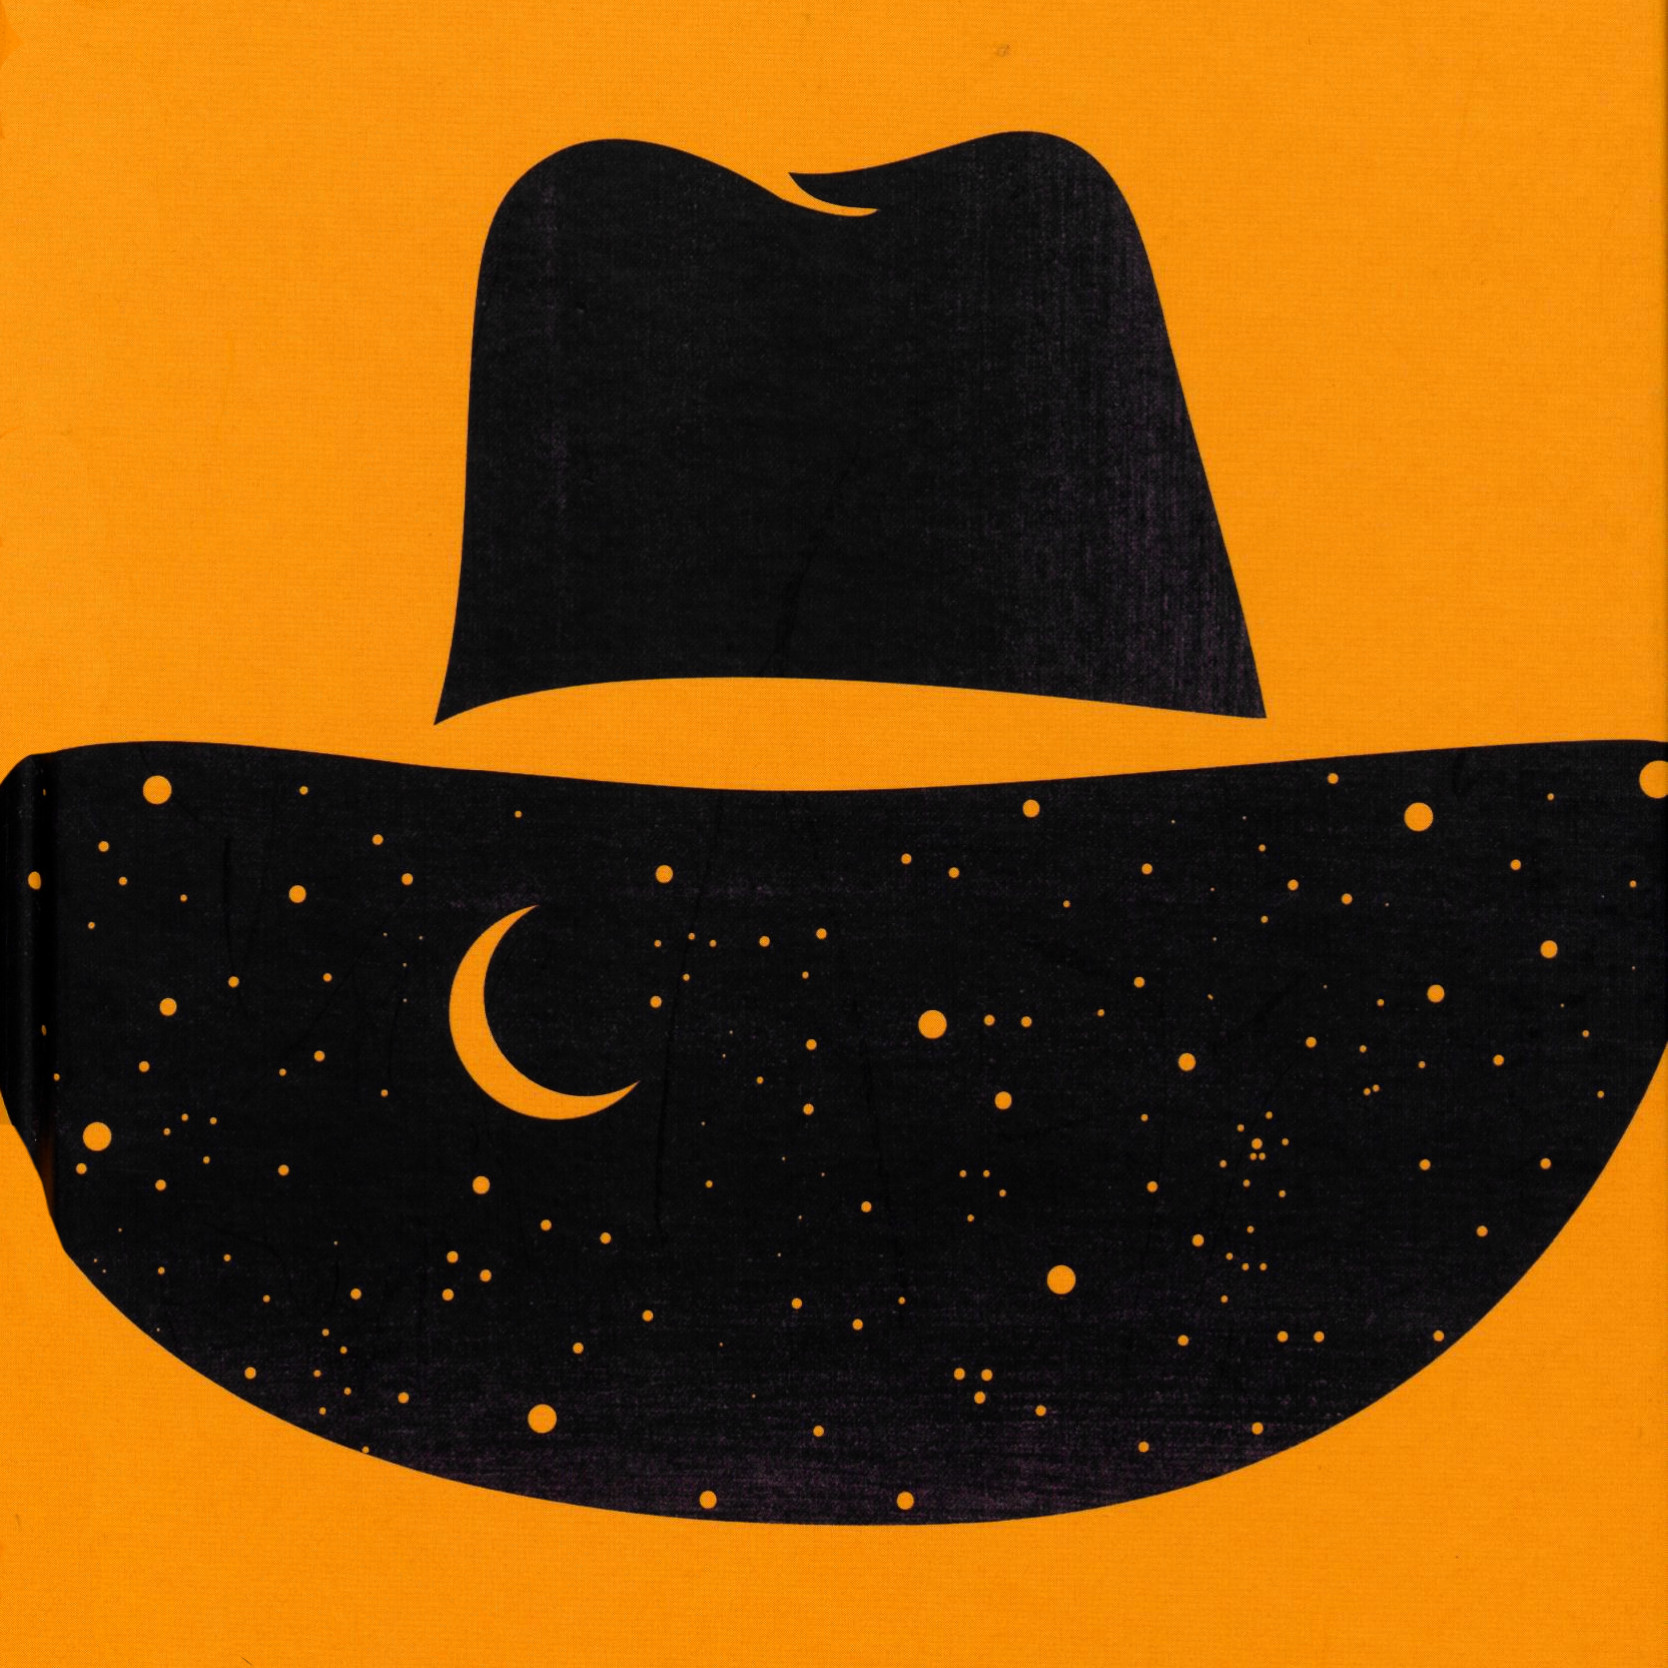 Czarny kapelusz z wygwieżdżonym niebem na rondzie